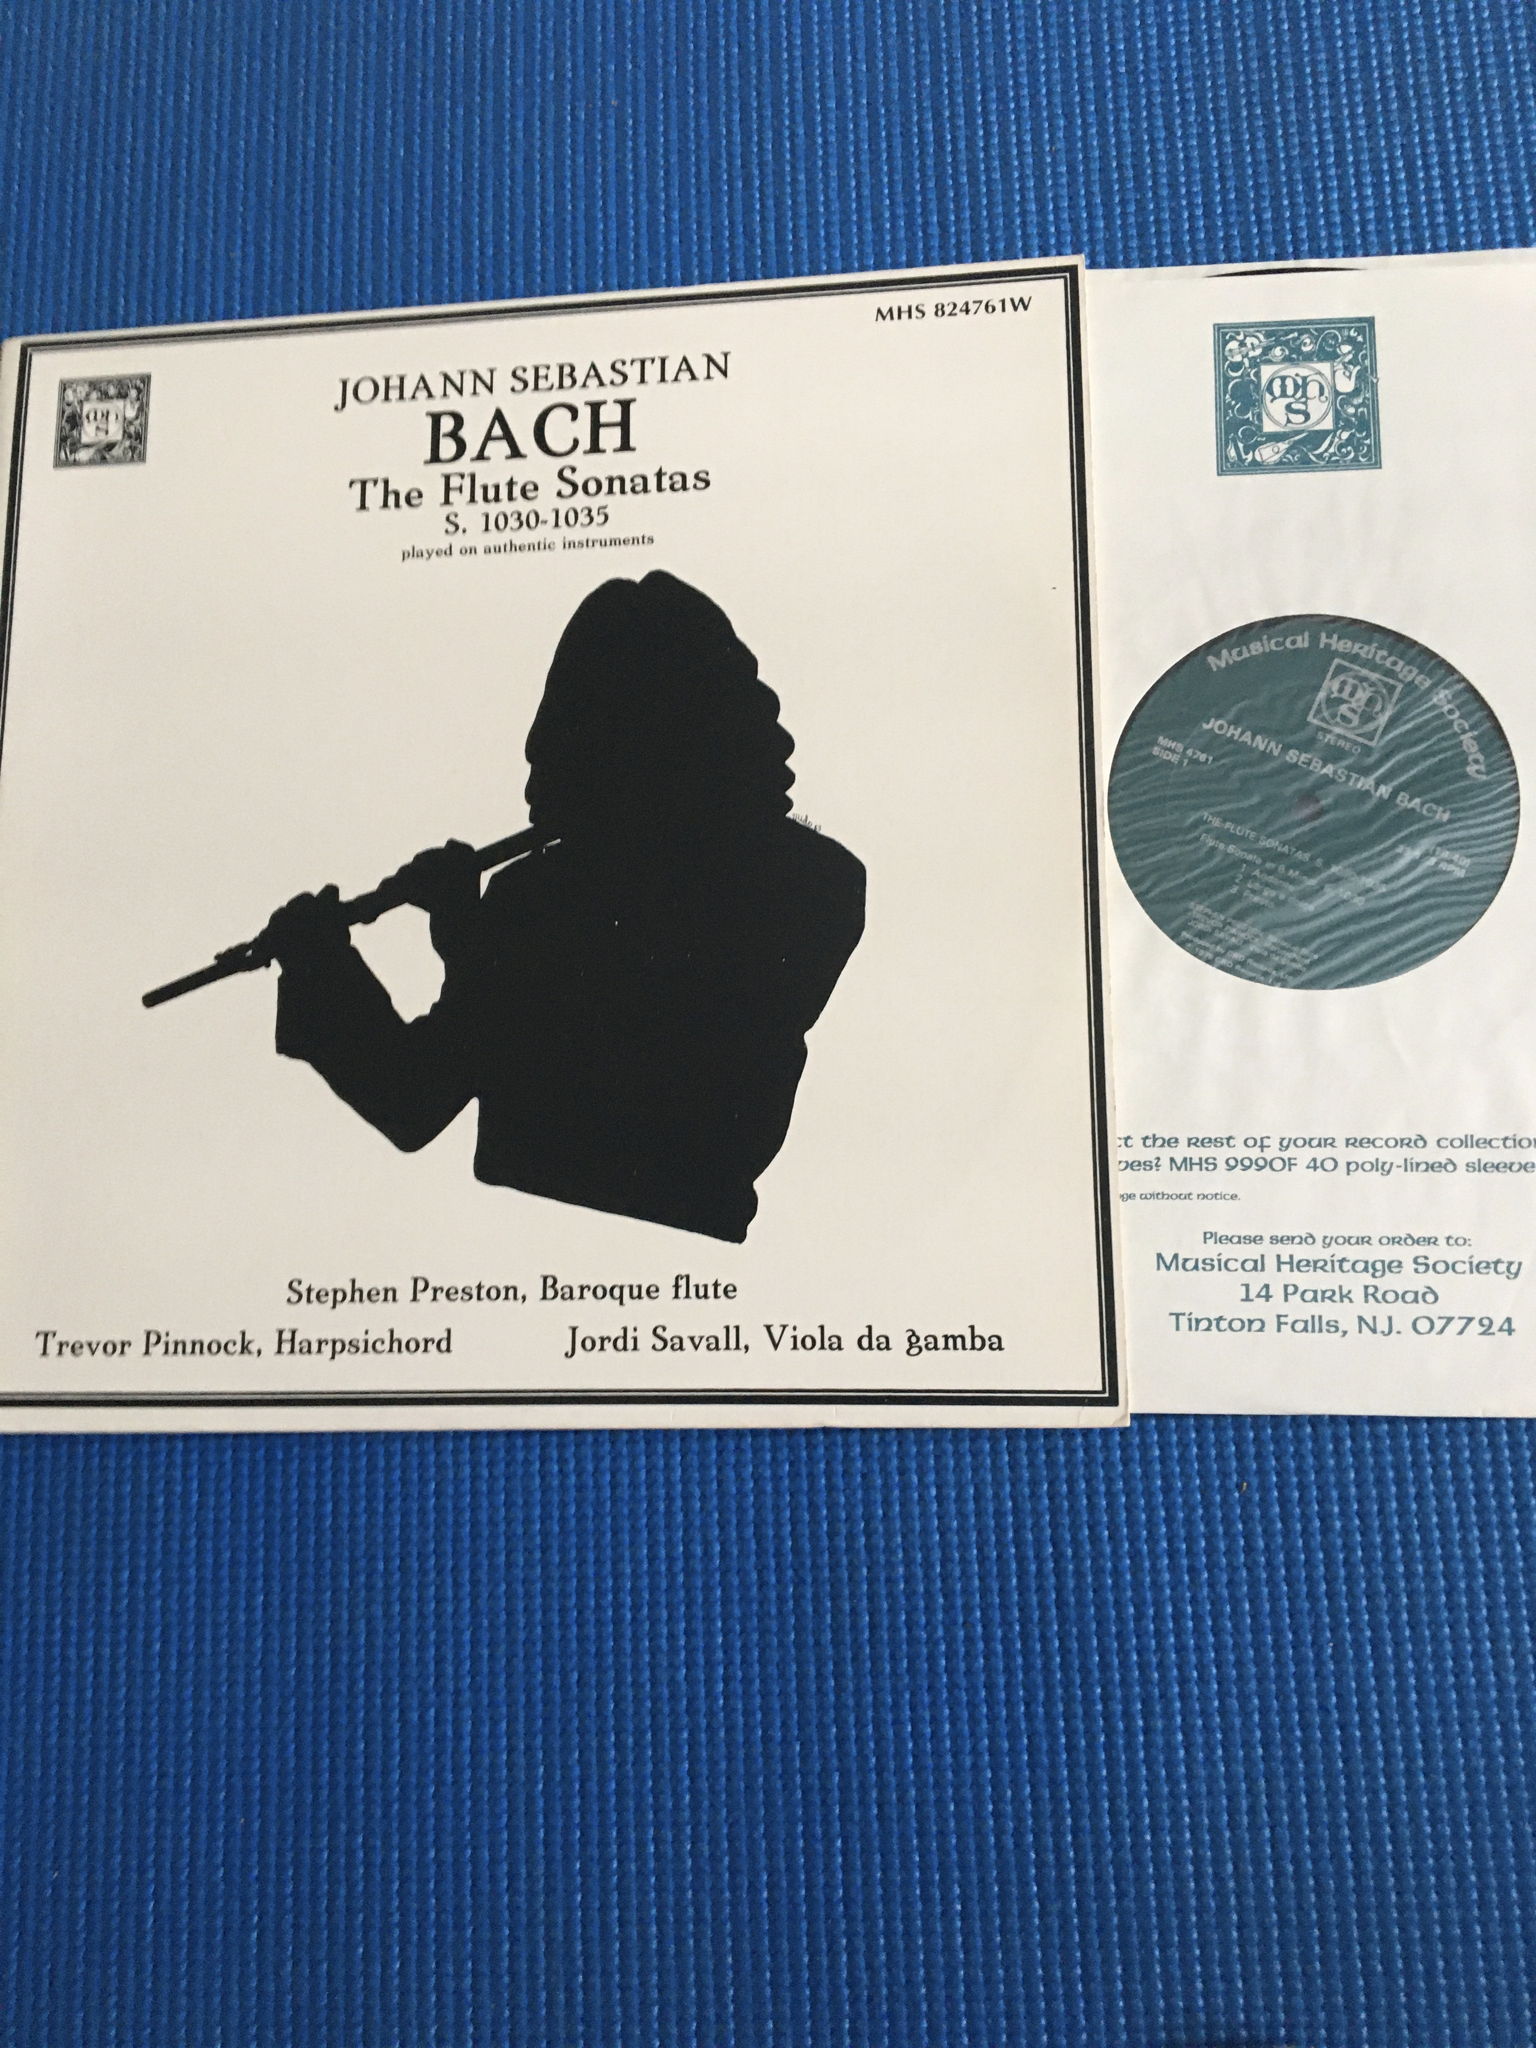 MHS Bach the Flute Sonatas S 1030-1035  Double Lp recor...